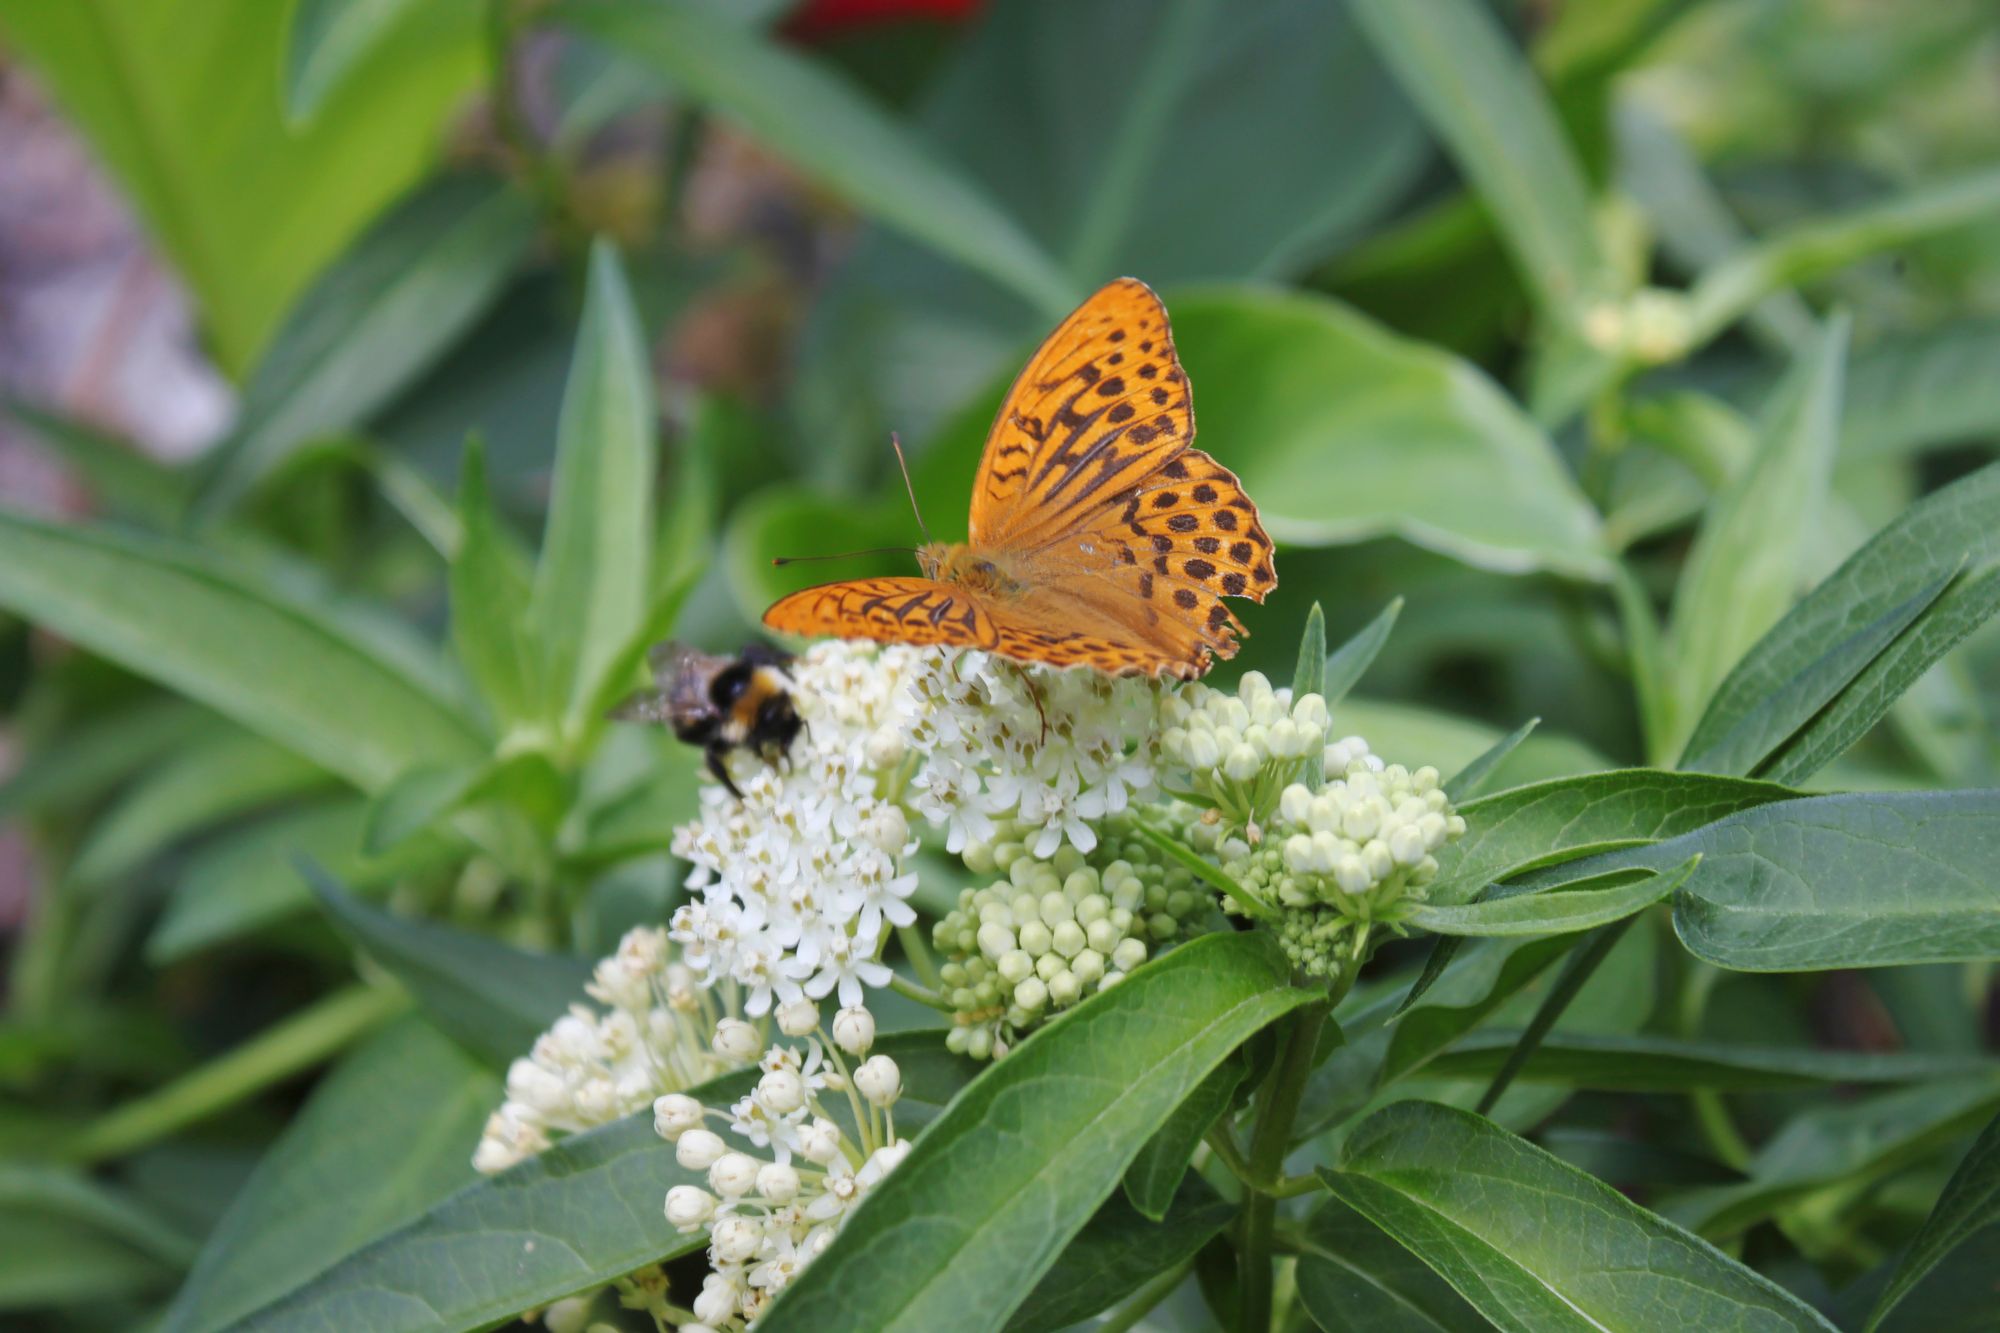 Runsaassa puutarhassa viihtyvät myös perhoset, tässä keisarinviitta. © Miina Leppänen